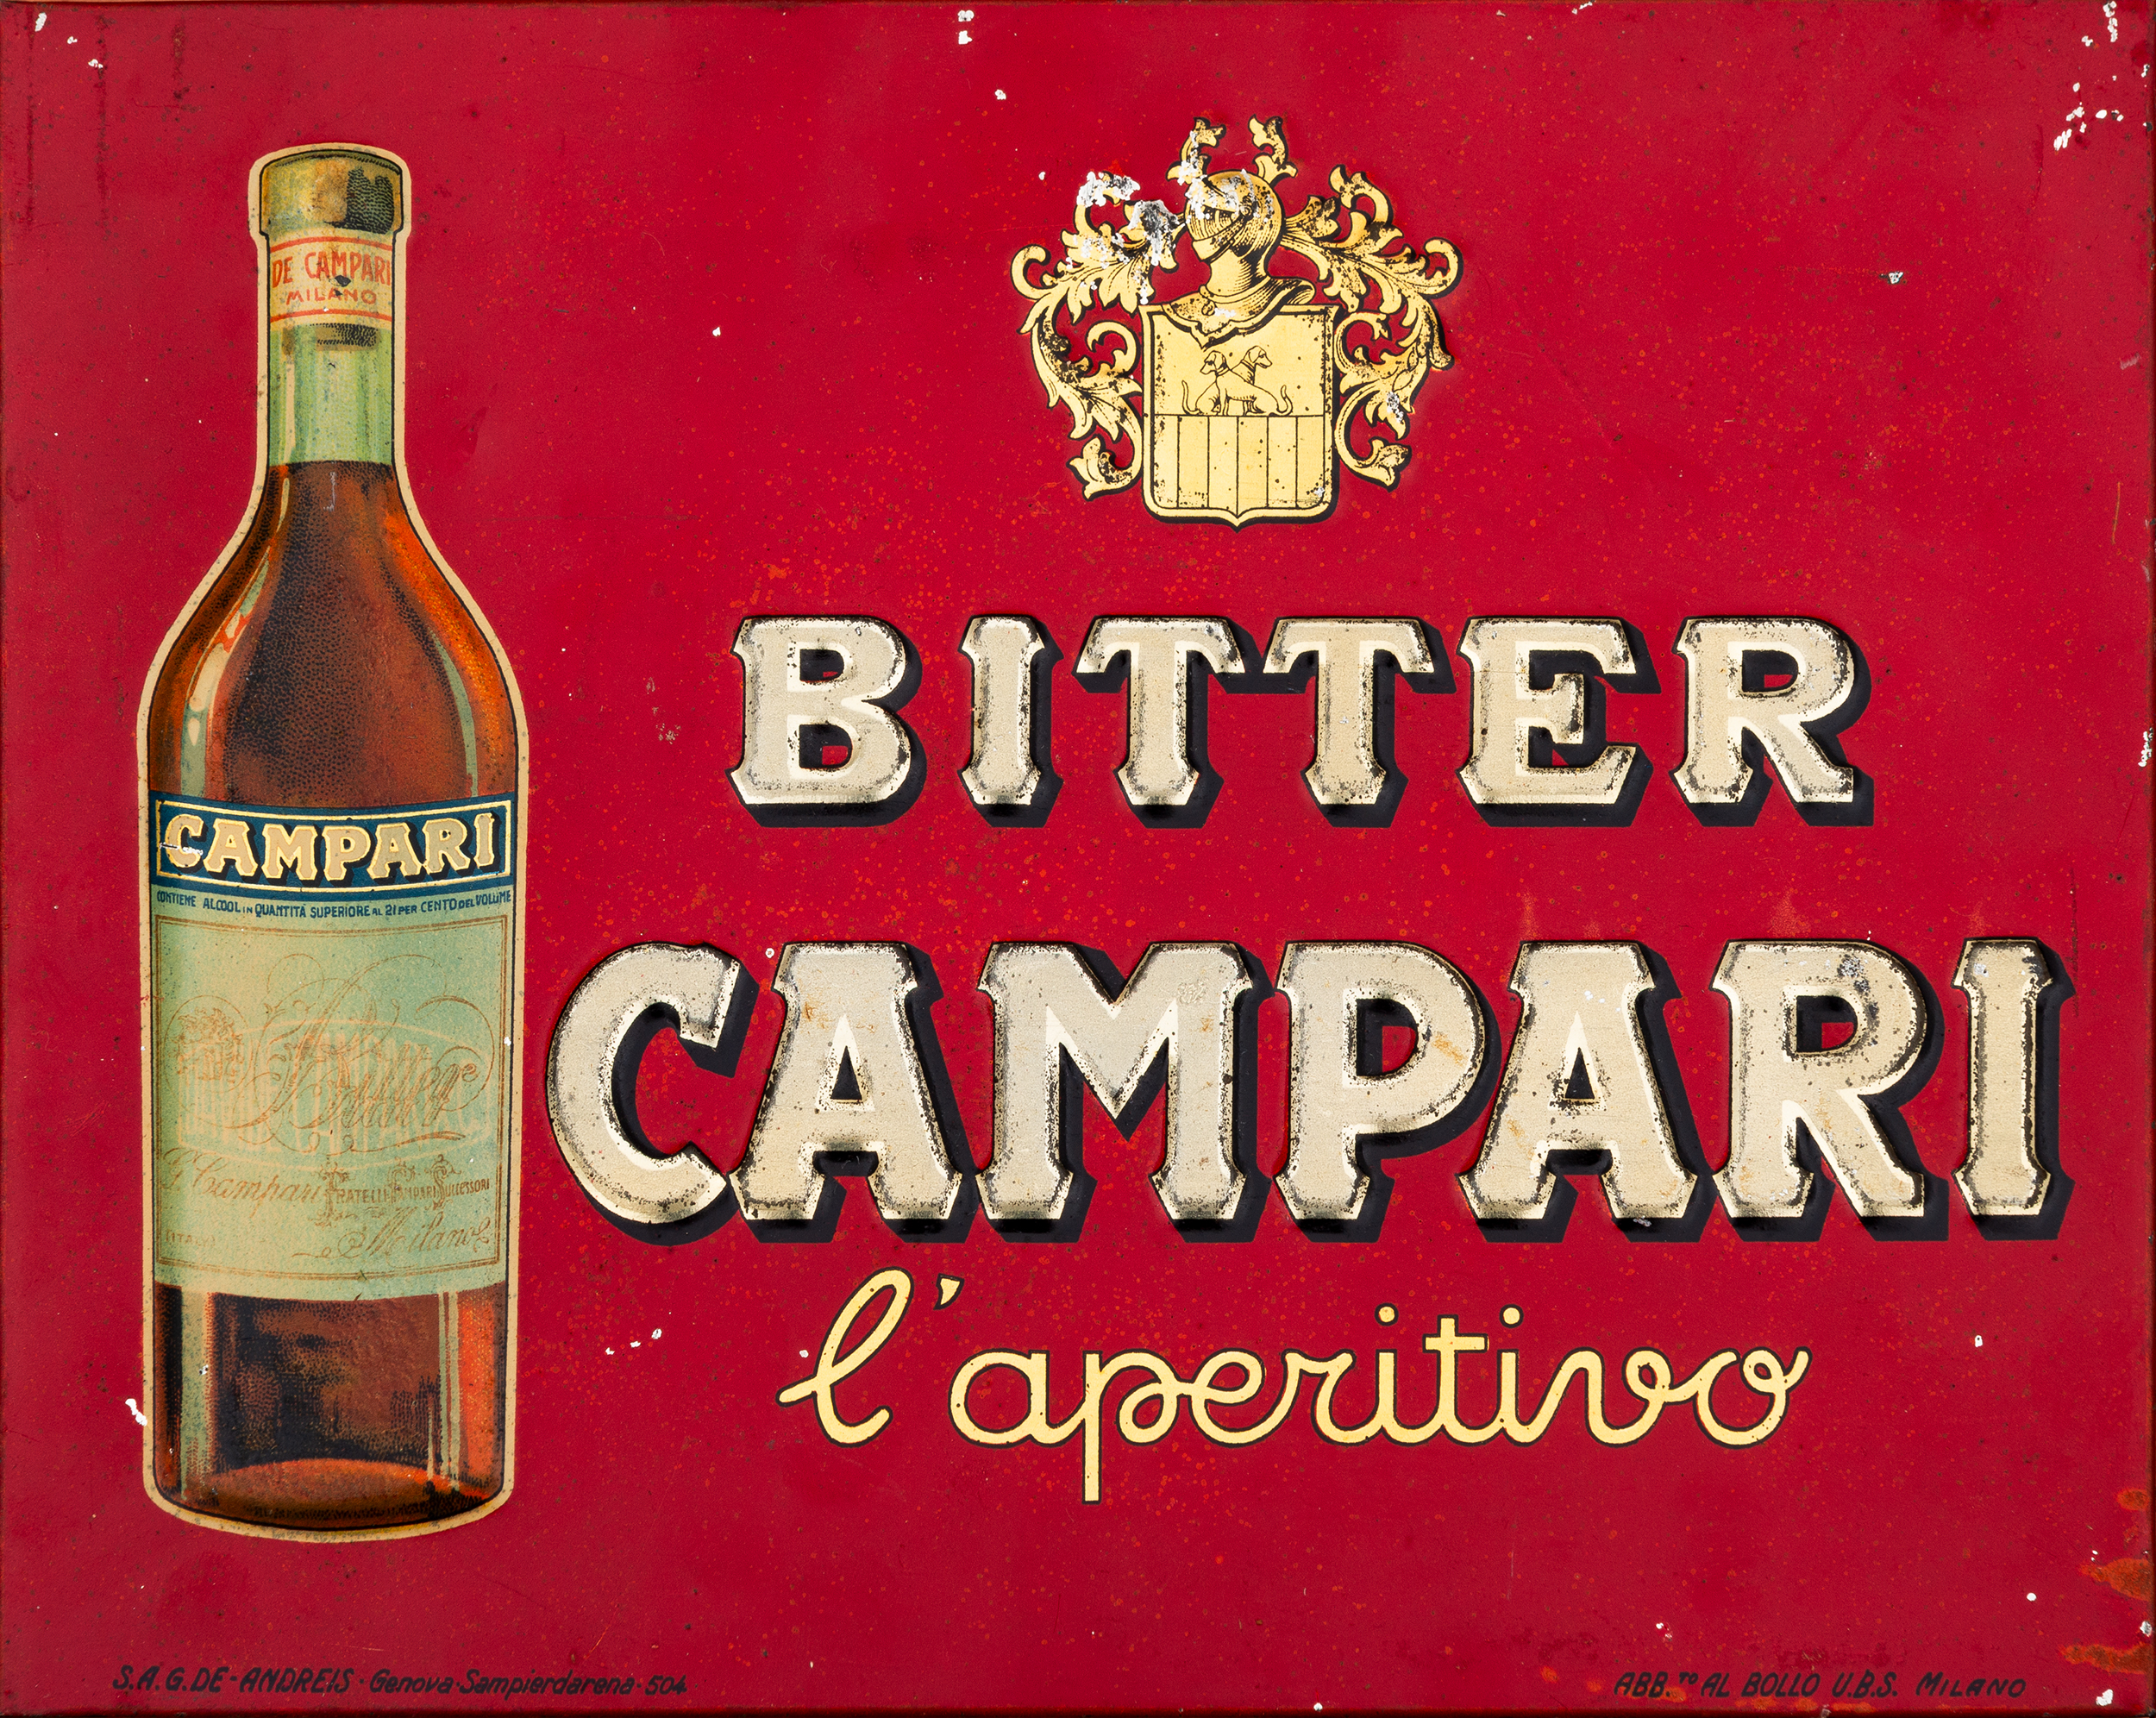 Campari [2] - Image 2 of 2